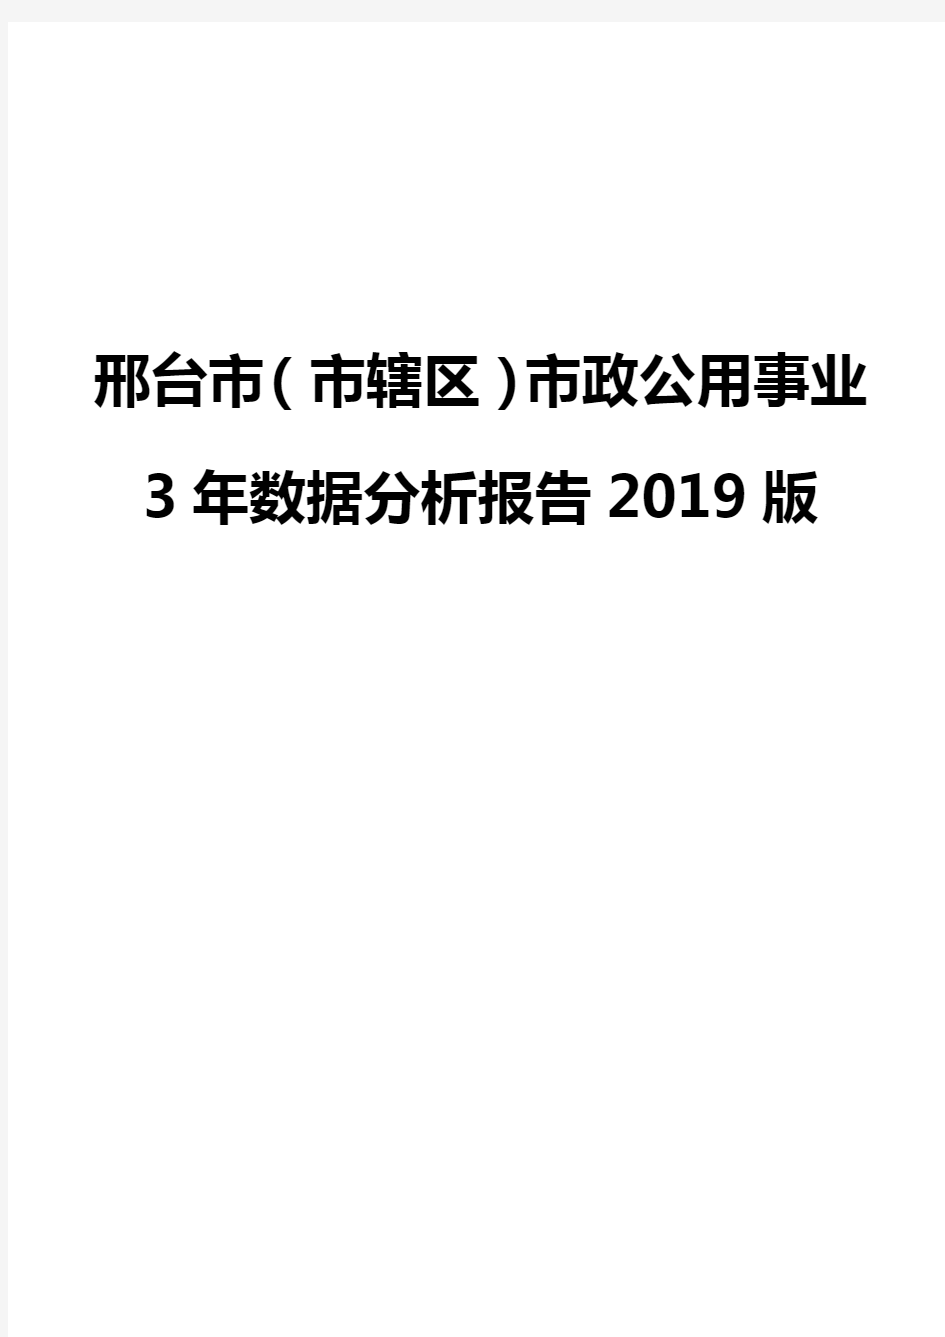 邢台市(市辖区)市政公用事业3年数据分析报告2019版